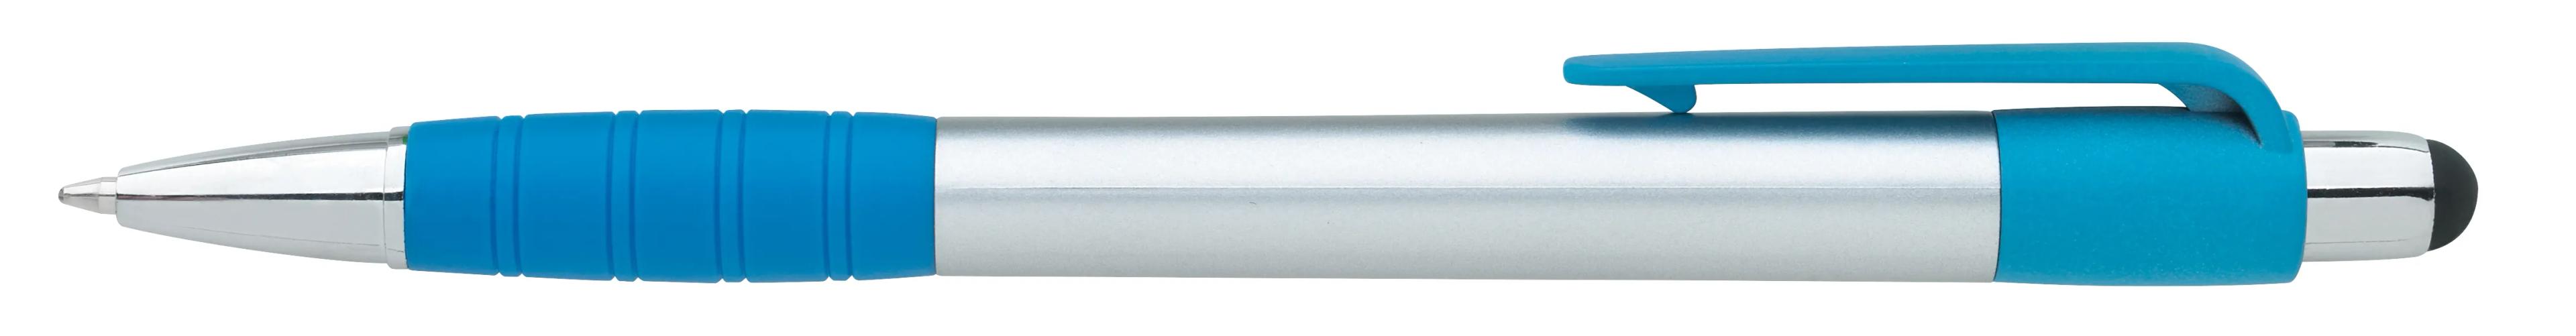 Silver Element Stylus Pen 22 of 53